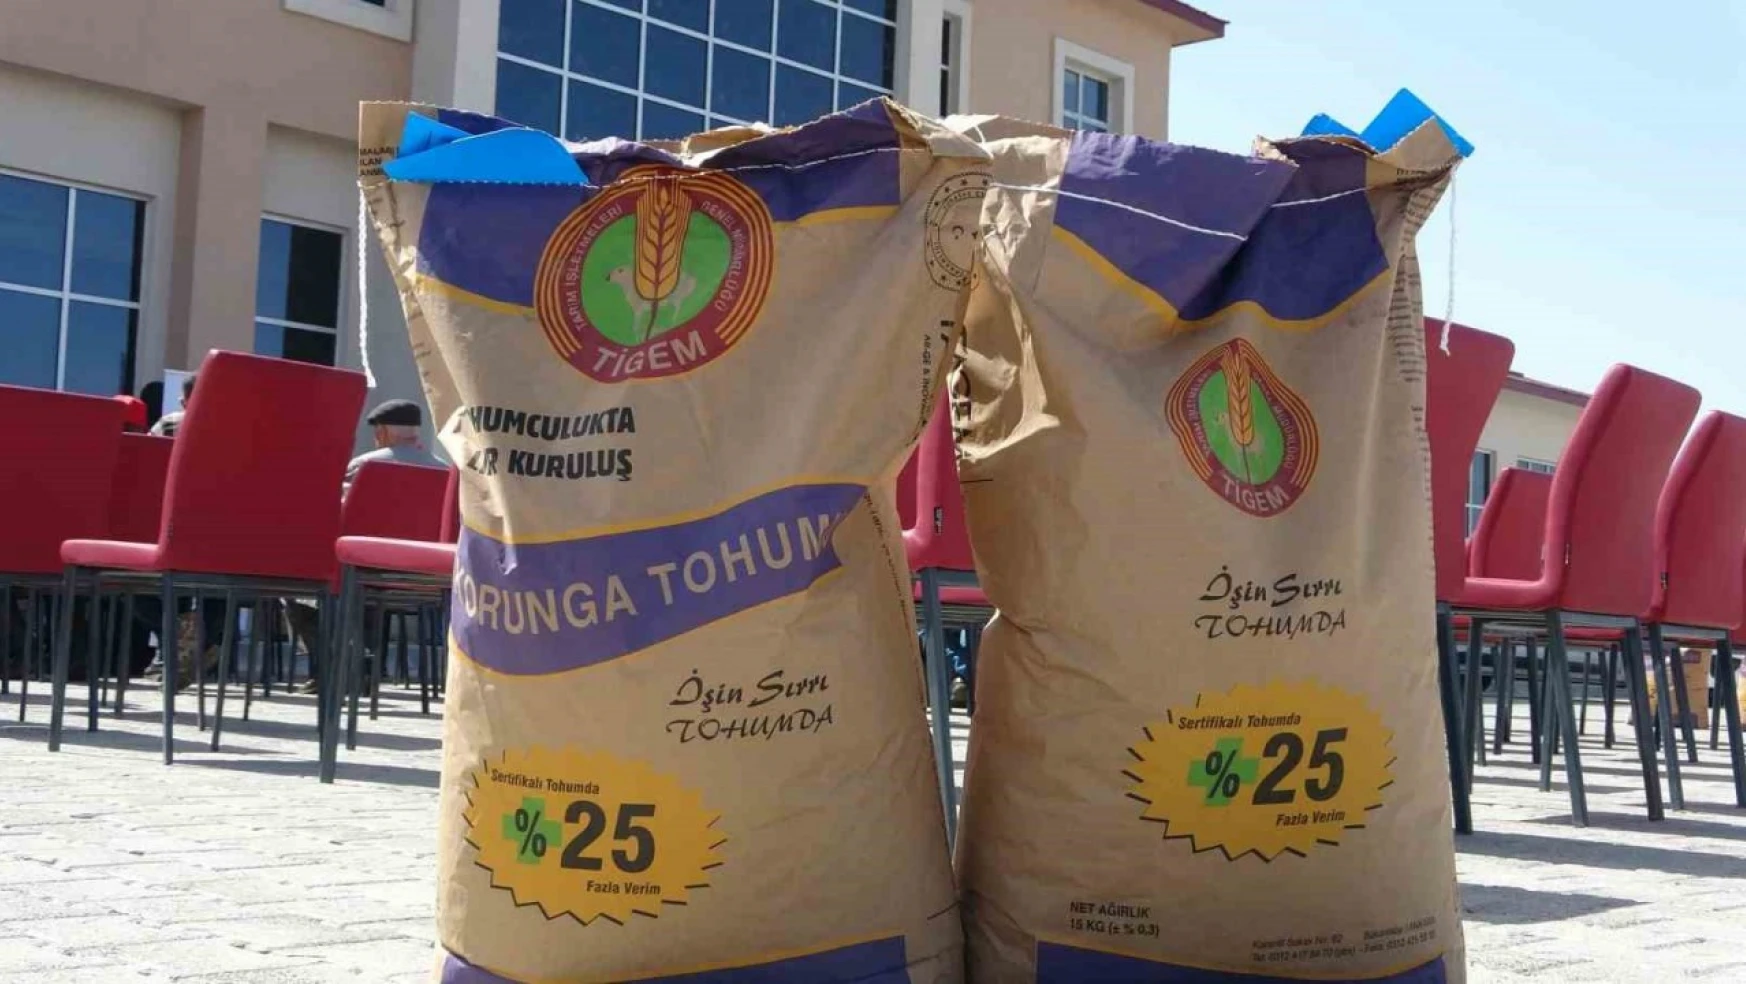 Ardahan'da 210 çiftçiye 45 ton korunga tohumu dağıtıldı